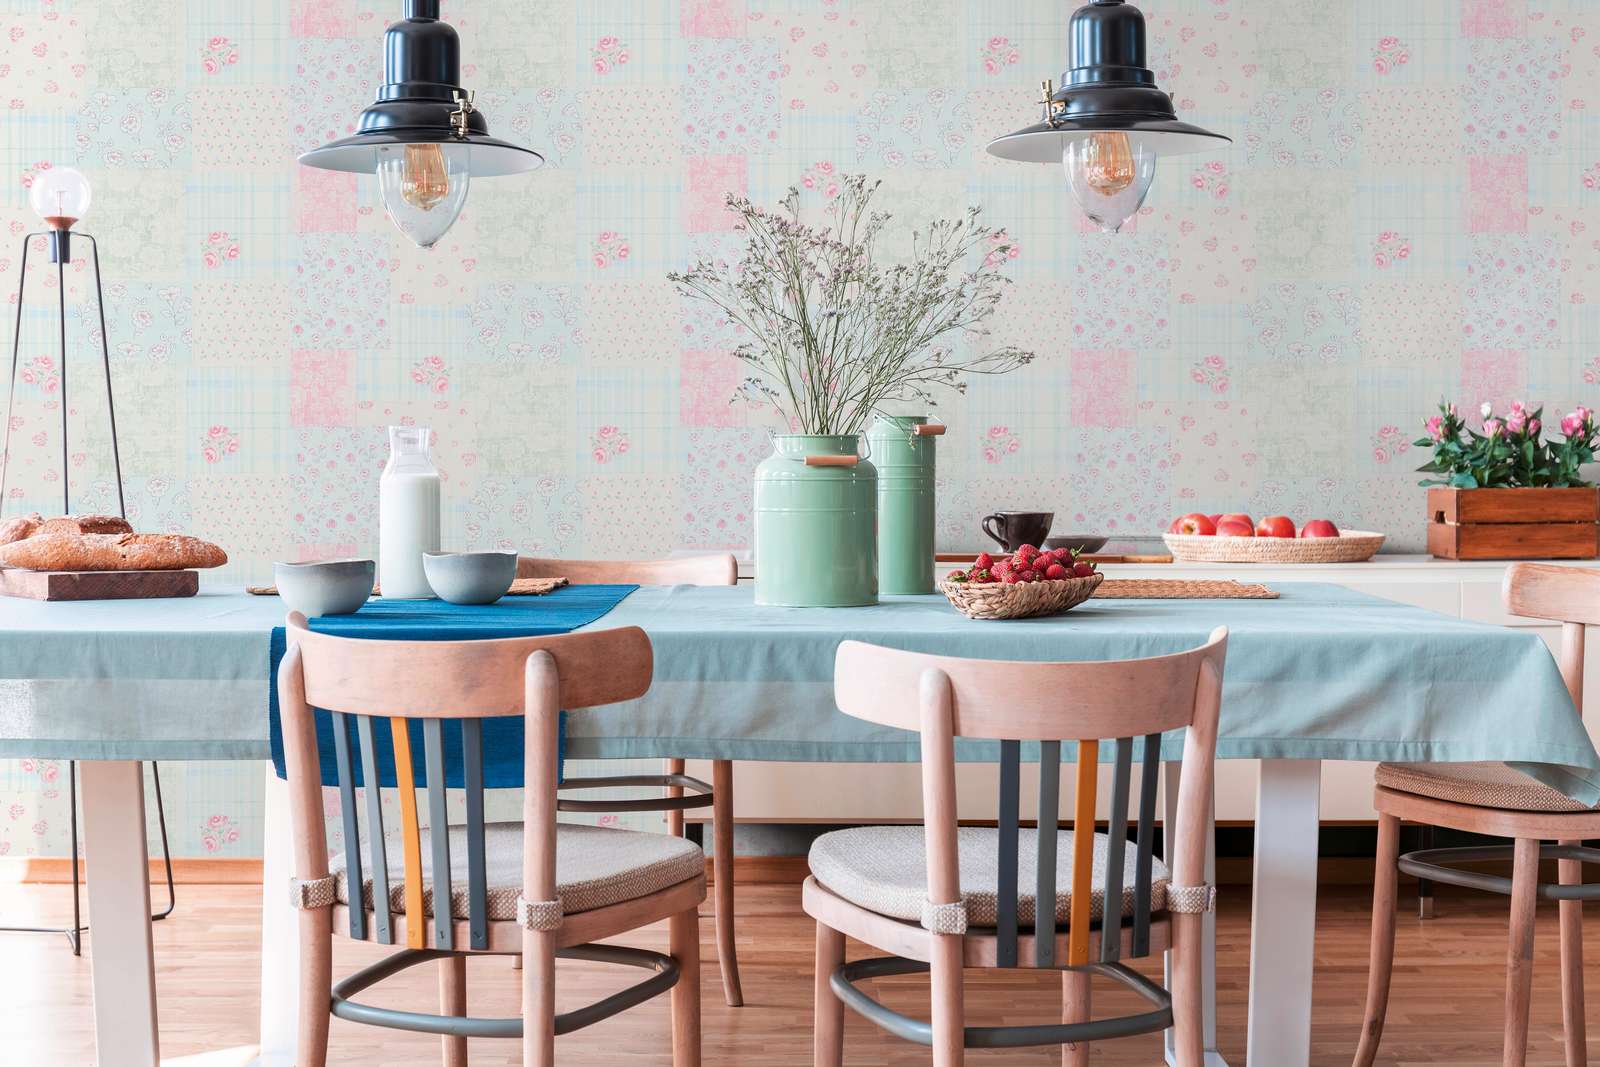             Papier peint intissé style maison de campagne floral - bleu, rose, blanc
        